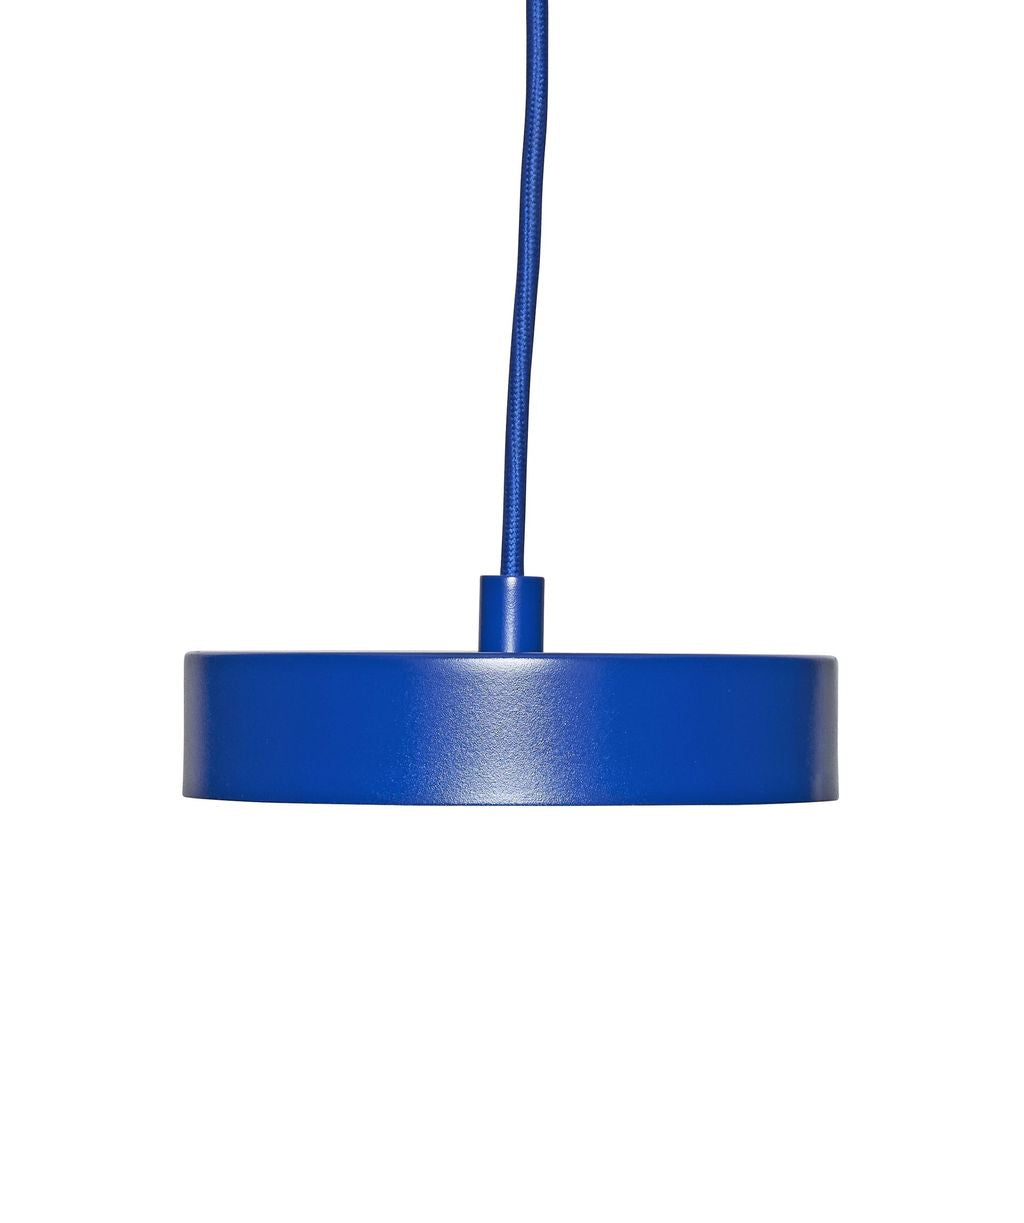 Hübsch Steg LED -taklampan, blå